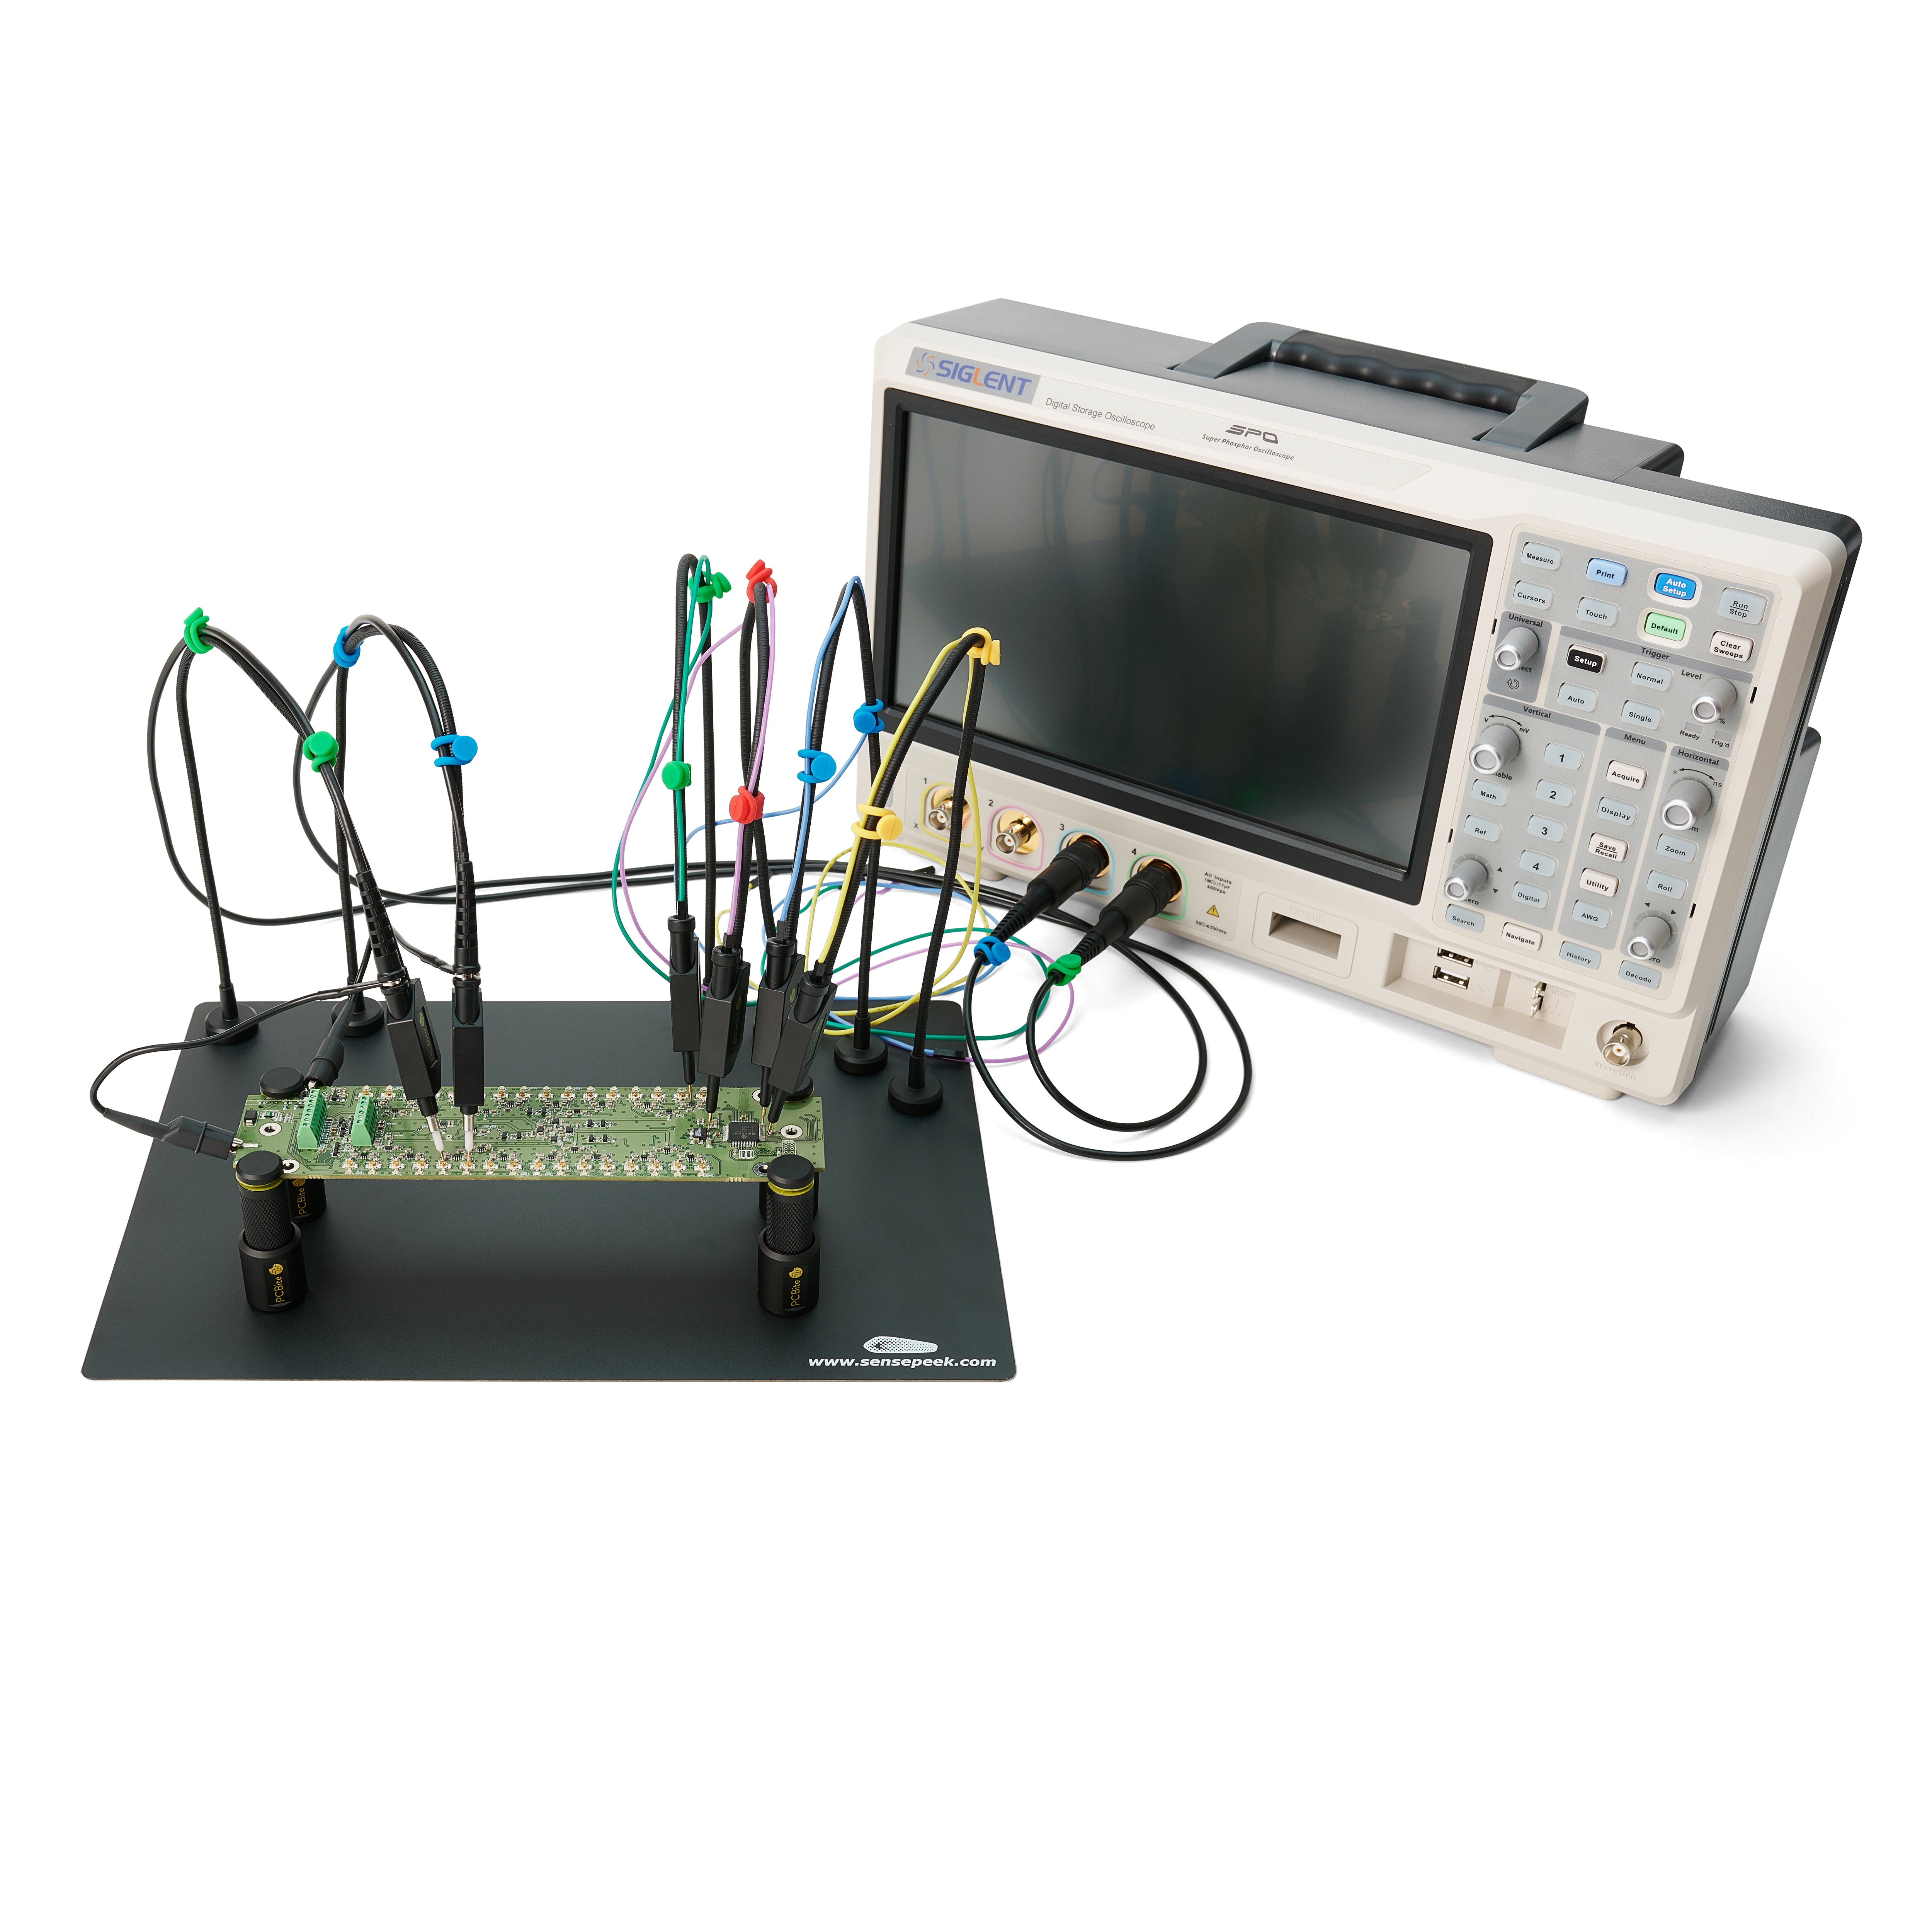 Sensepeek PCBite kit with 2x SQ500 500 MHz and 4x SQ10 handsfree probes